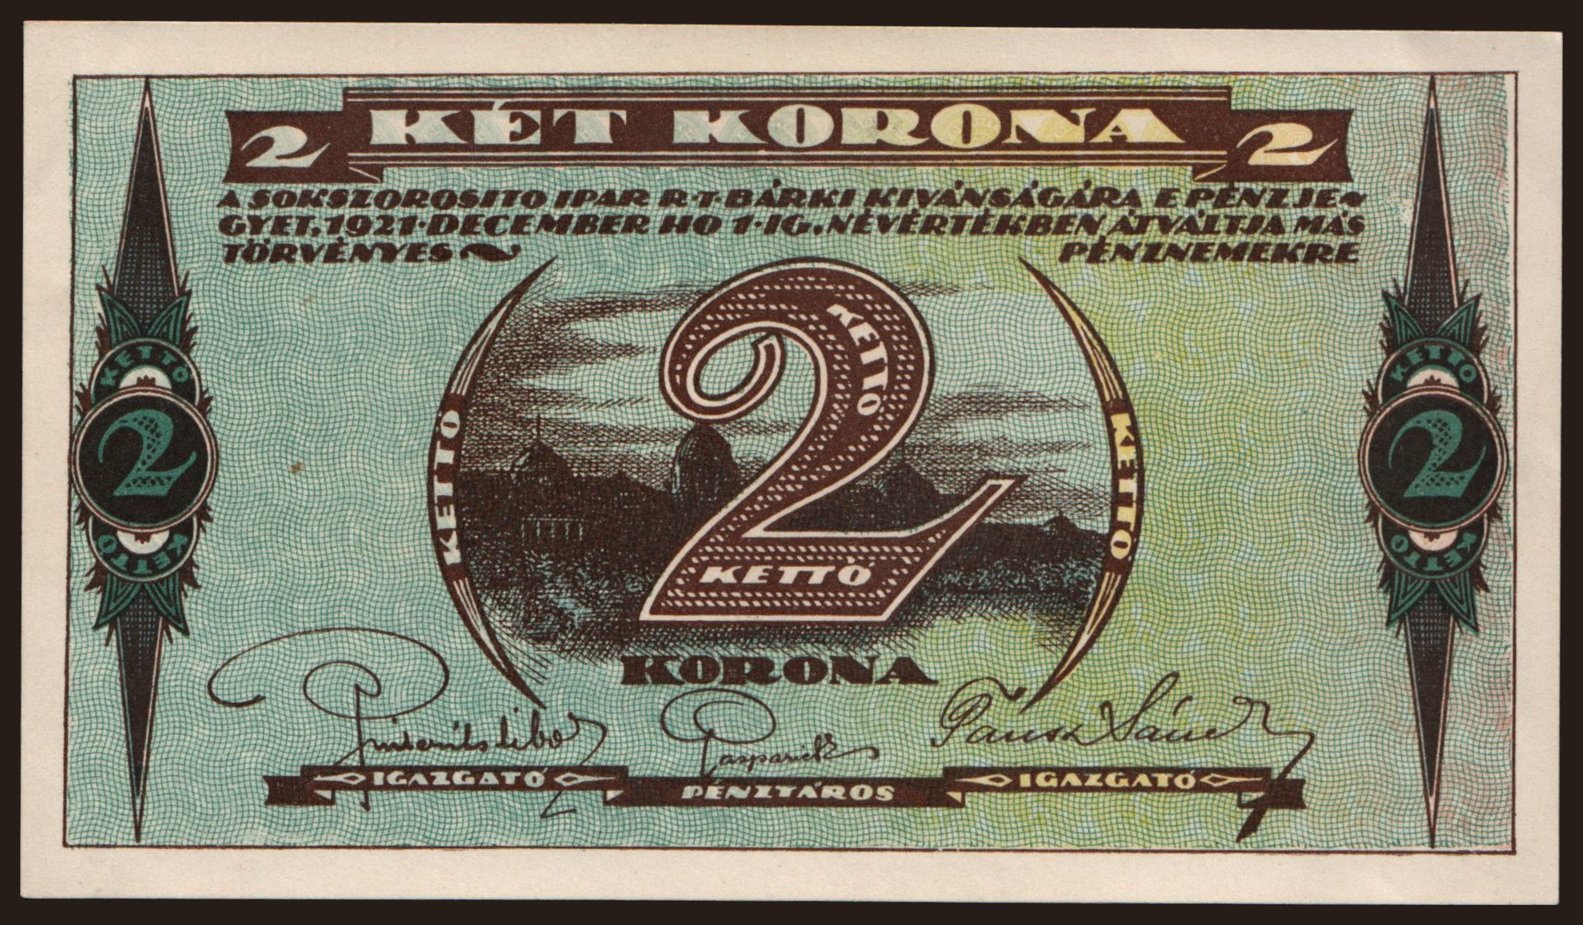 Budapest/ Sokszorosító Ipar R.T., 2 korona, 1921